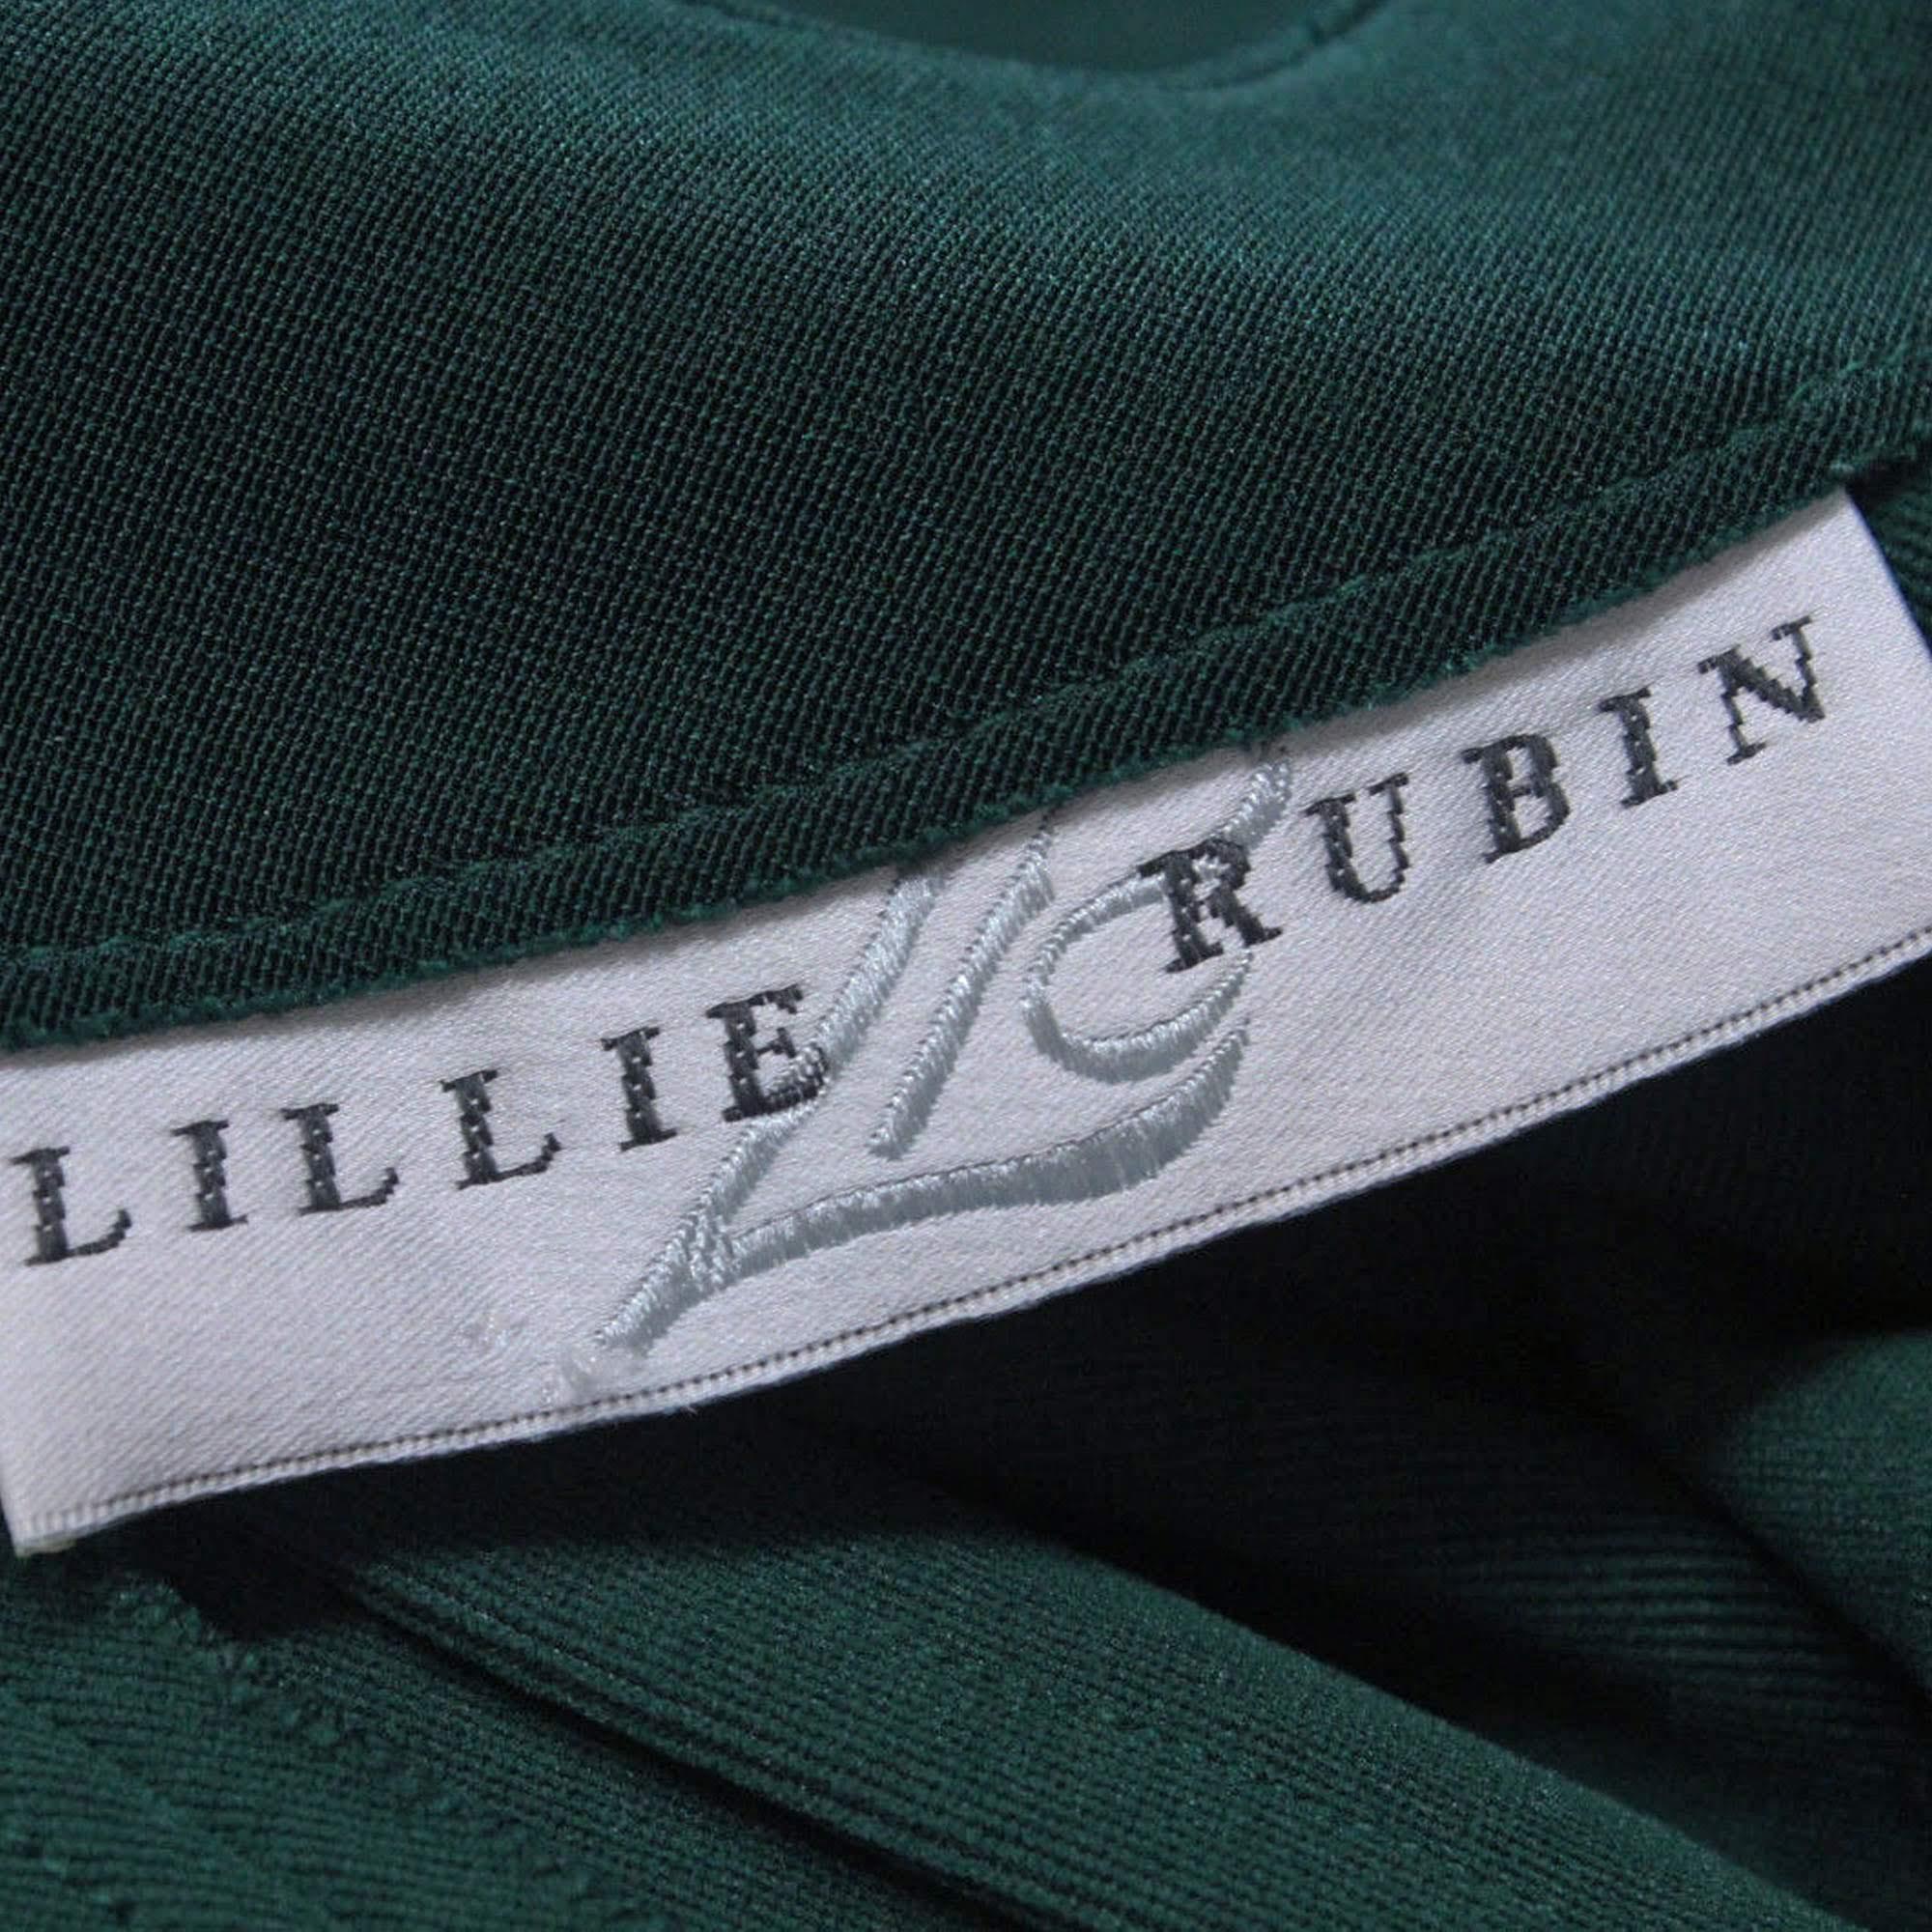 Lillie Rubin Catsuit Mod Embellished Jumpsuit Vintage 70s S 1